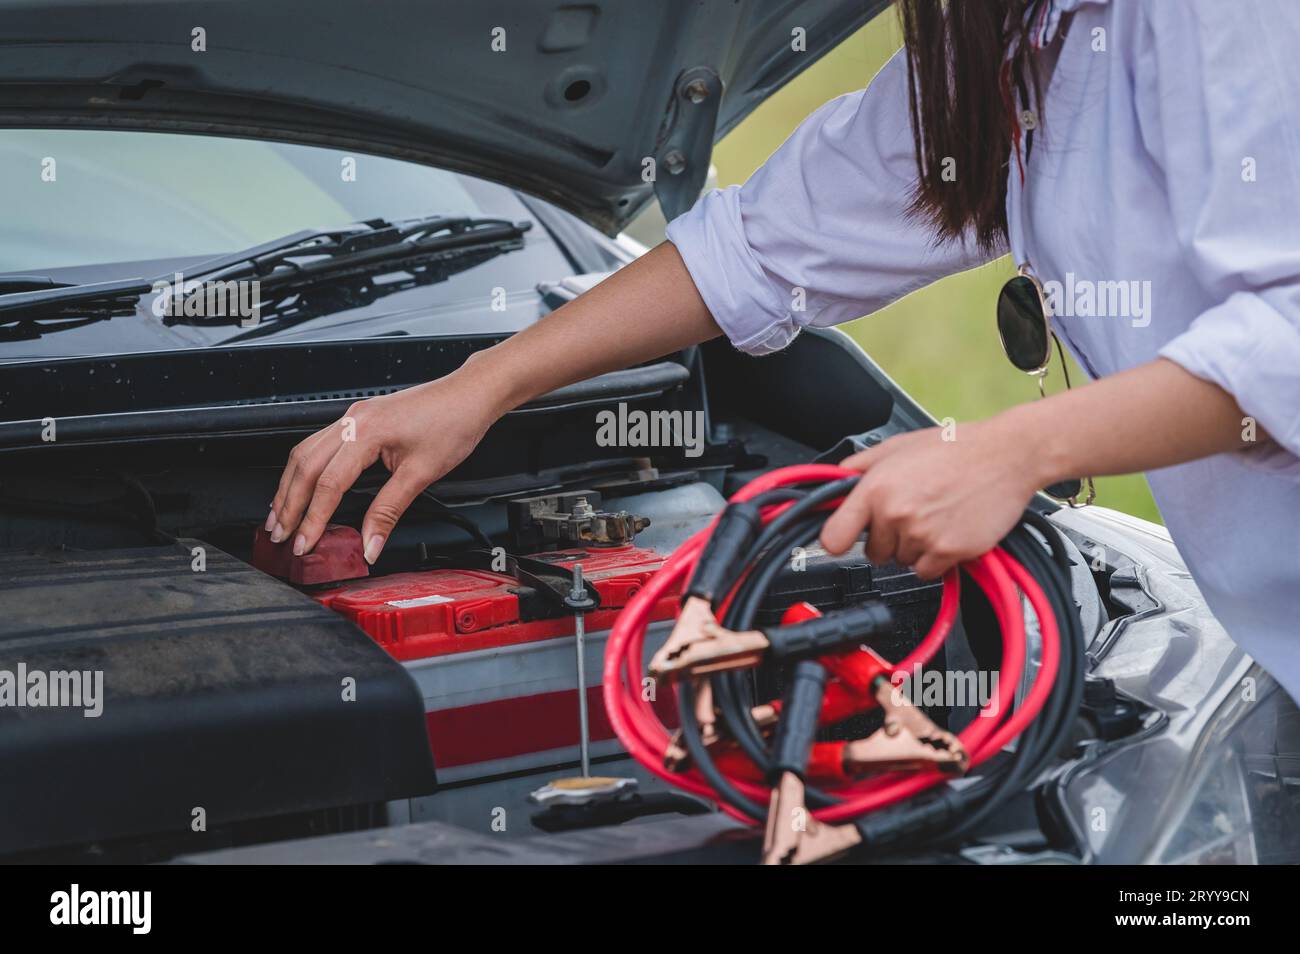 Großaufnahme einer Frau, die das Batteriekabel hält, Kupferdraht für die Reparatur eines defekten Fahrzeugs hält, indem die Batterie mit der roten und schwarzen Linie an e angeschlossen wird Stockfoto